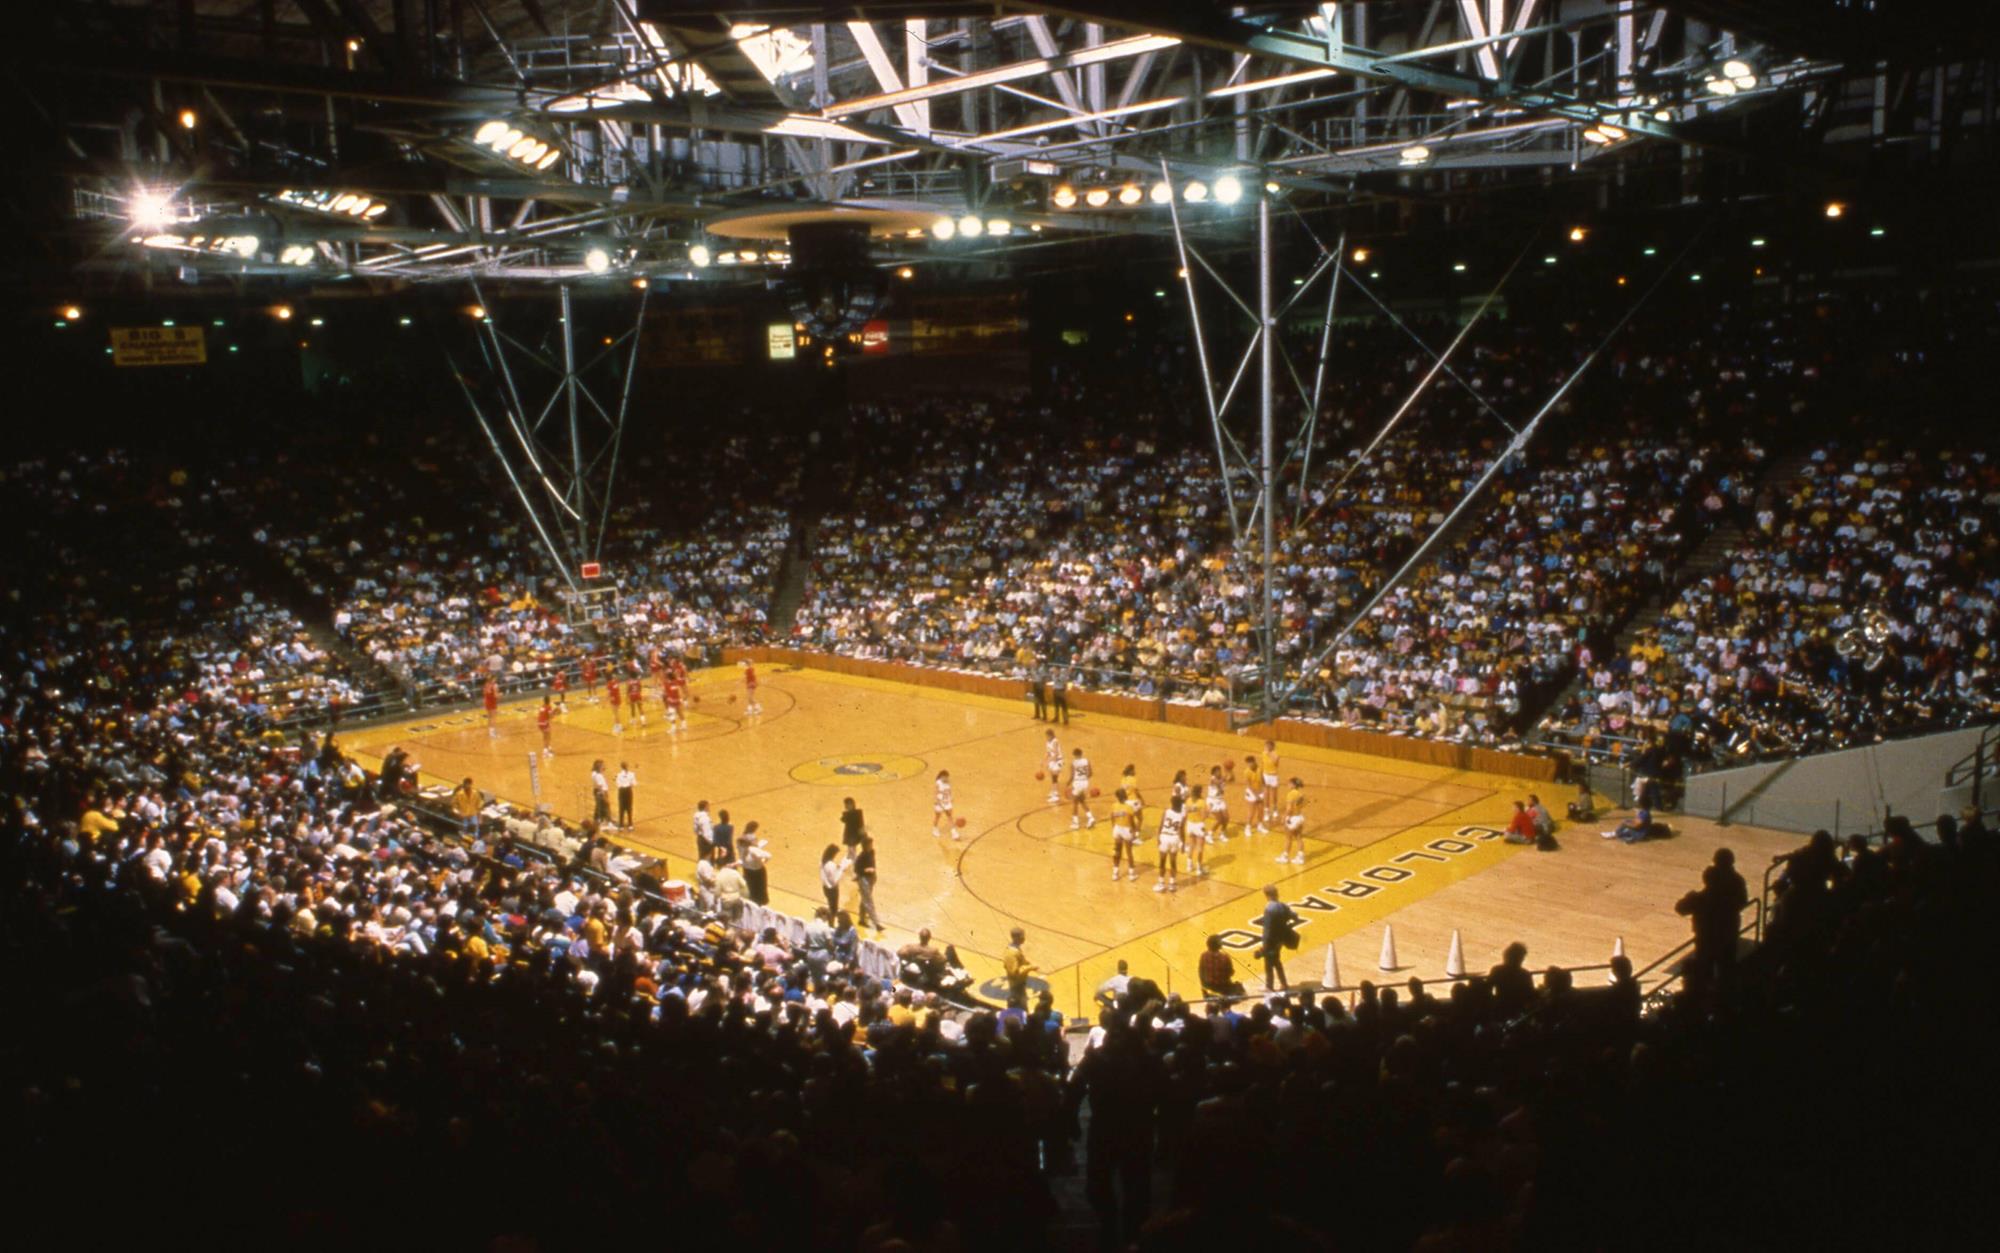 CU basketball court 1989